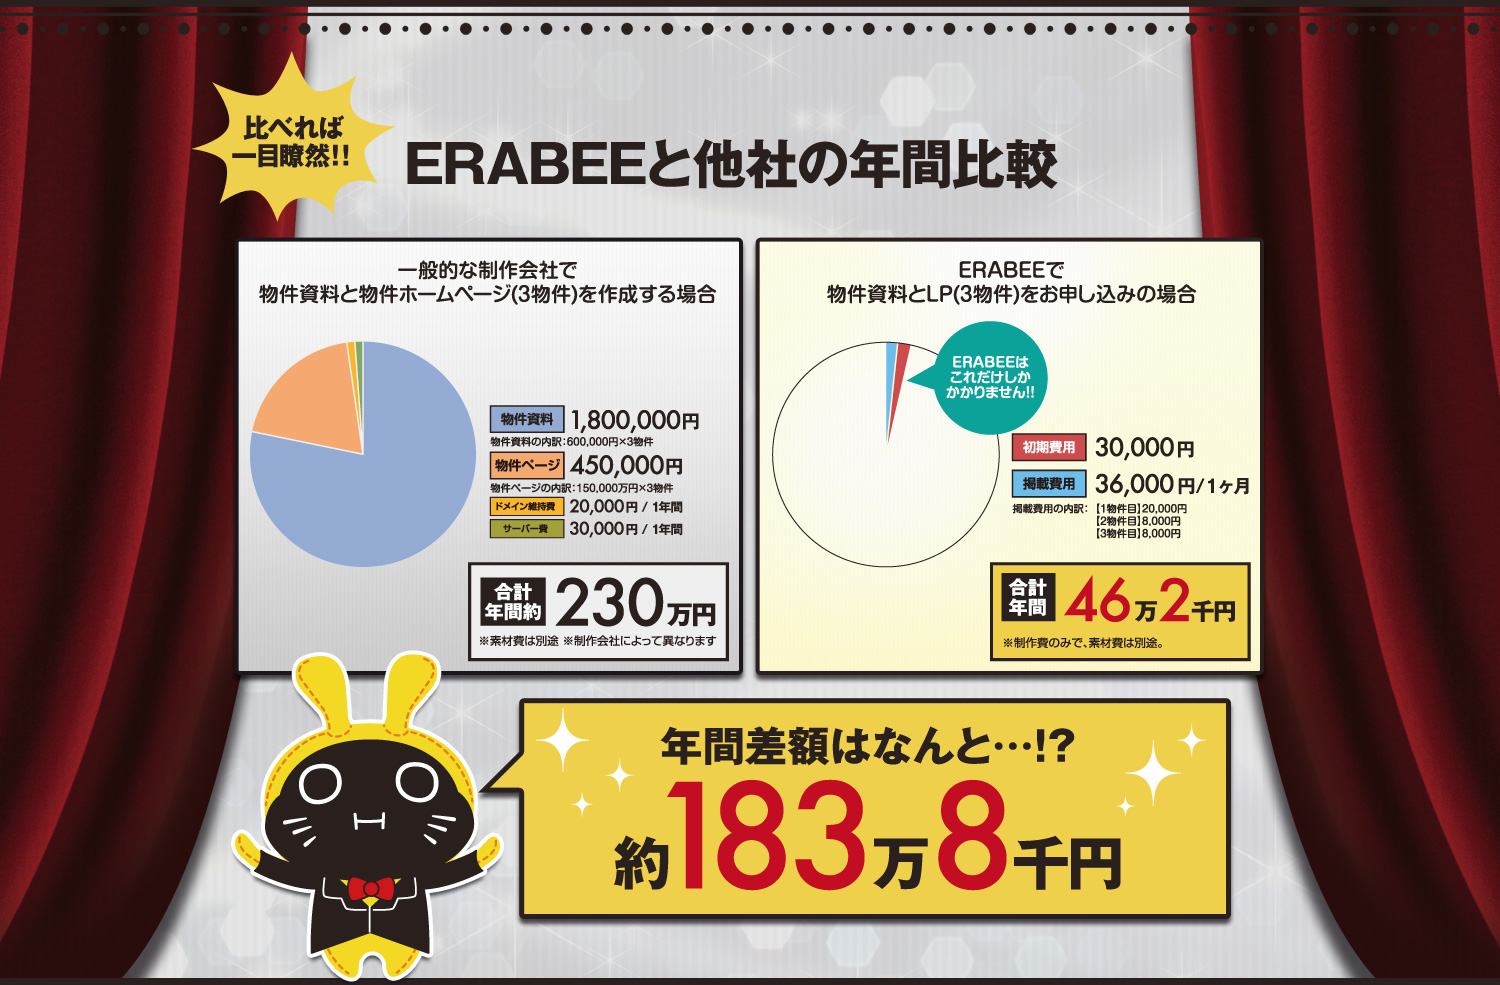 ホームページや資料を３物件分作成する場合にかかる費用は、ERABEEと他社では年間約１８３万８千円も違います。